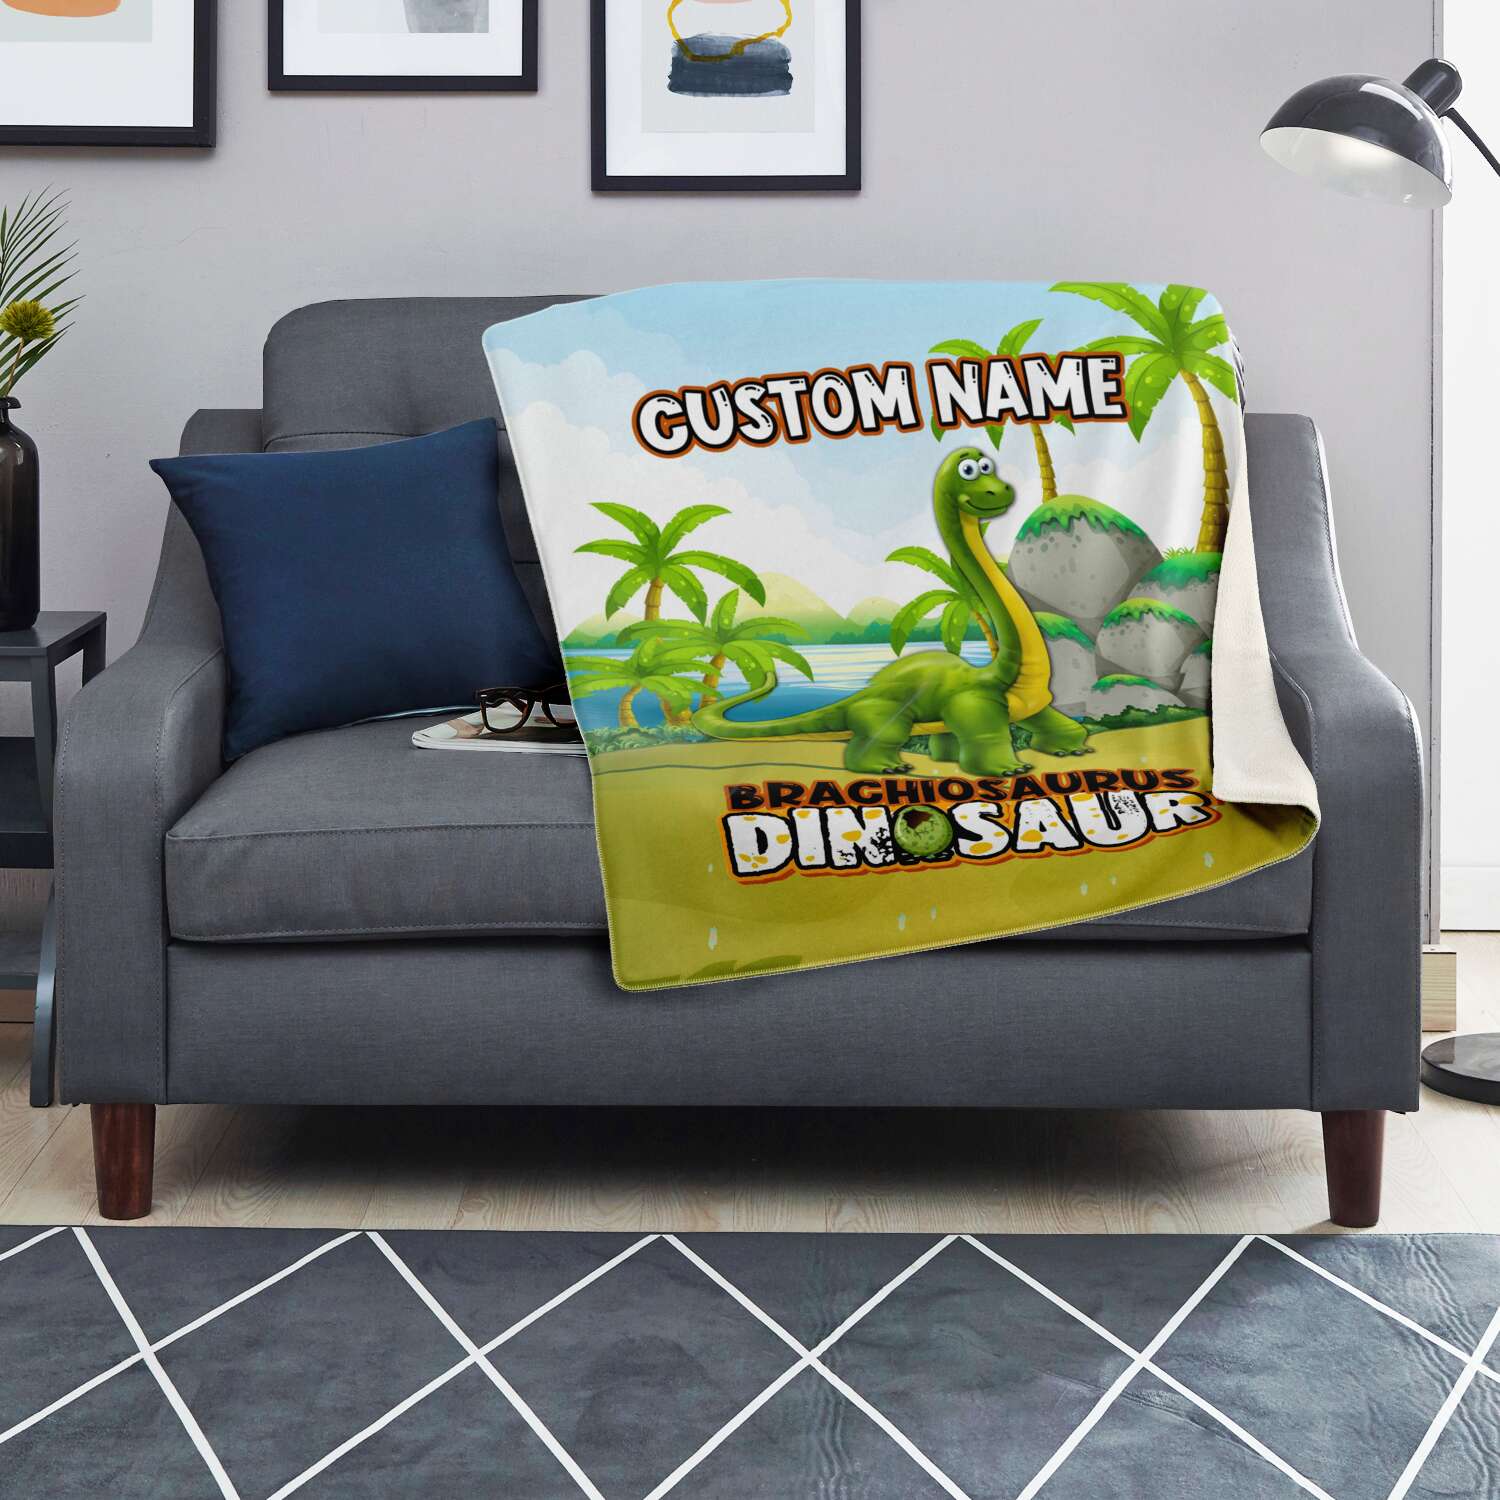 Personalized Name Brachiosaurus Dinosaur Blanket for Kids, Custom Name Blanket for Boys & Girls